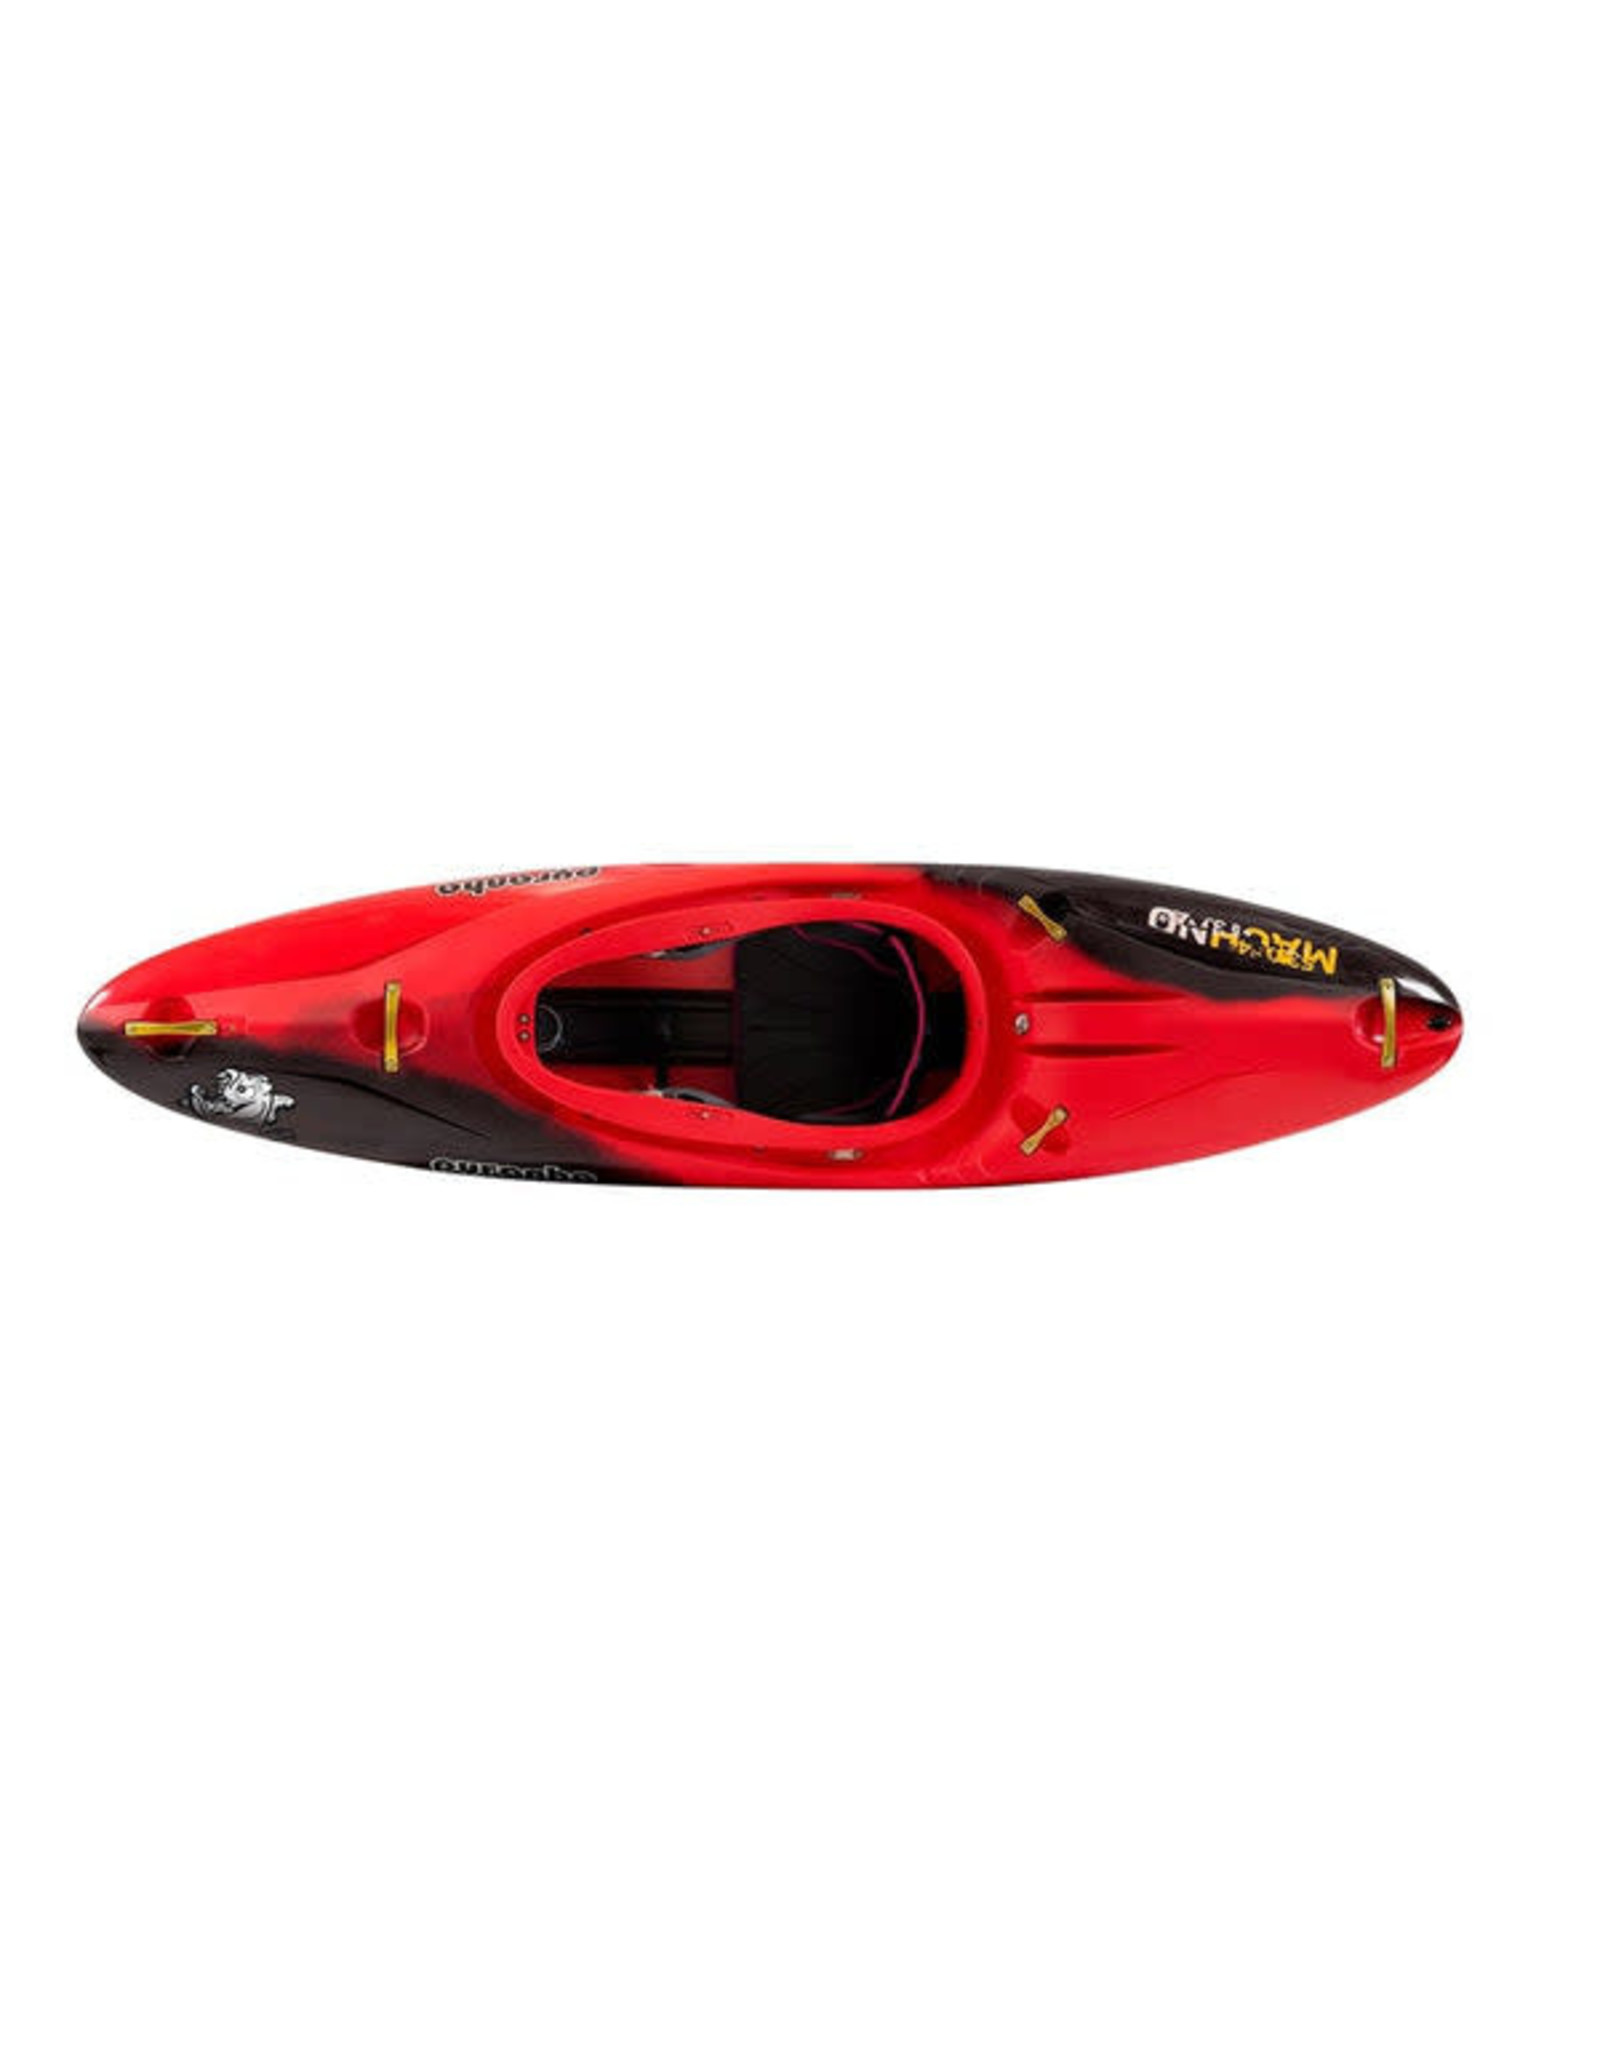 Pyranha Pyranha kayak Machno Stout 2